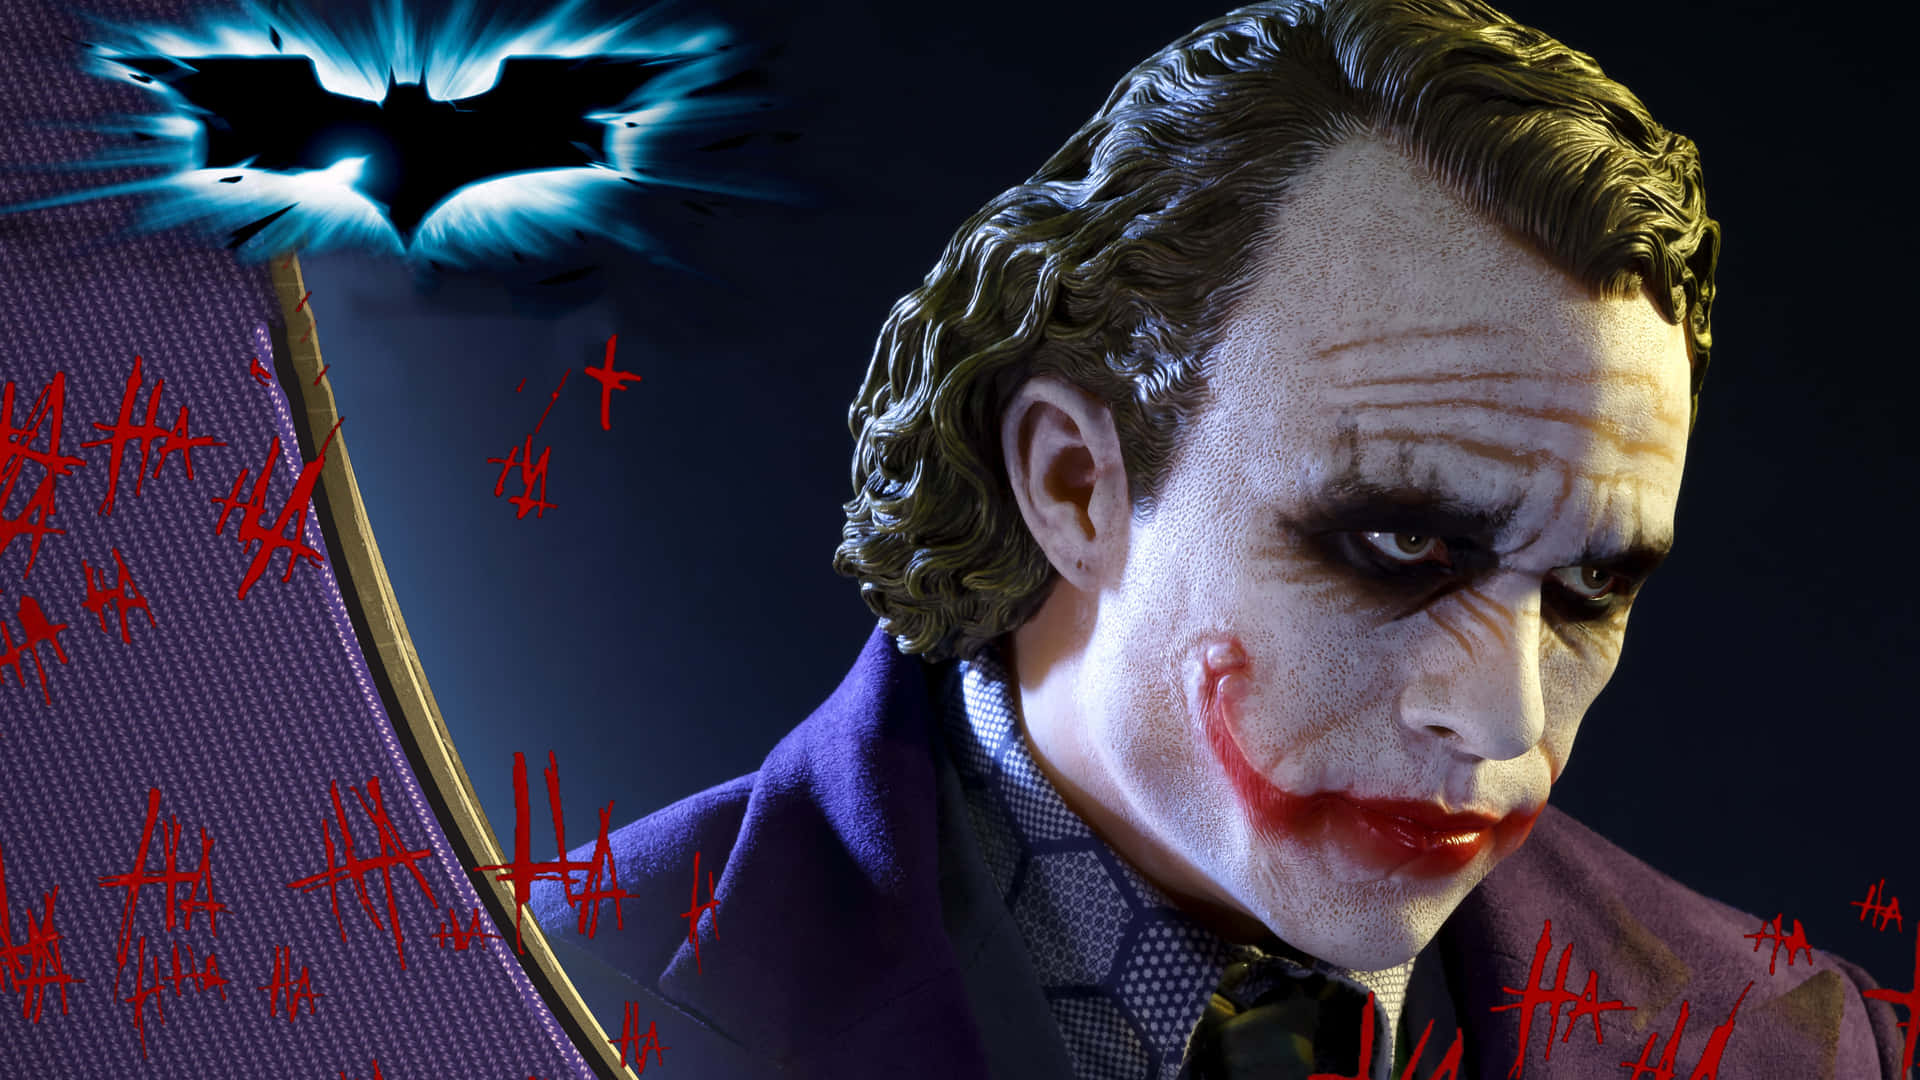 Jokerenindtager Midterste Scene I Den Ultimative High Definition Oplevelse - Dark Knight I 4k Ultra Hd. Wallpaper